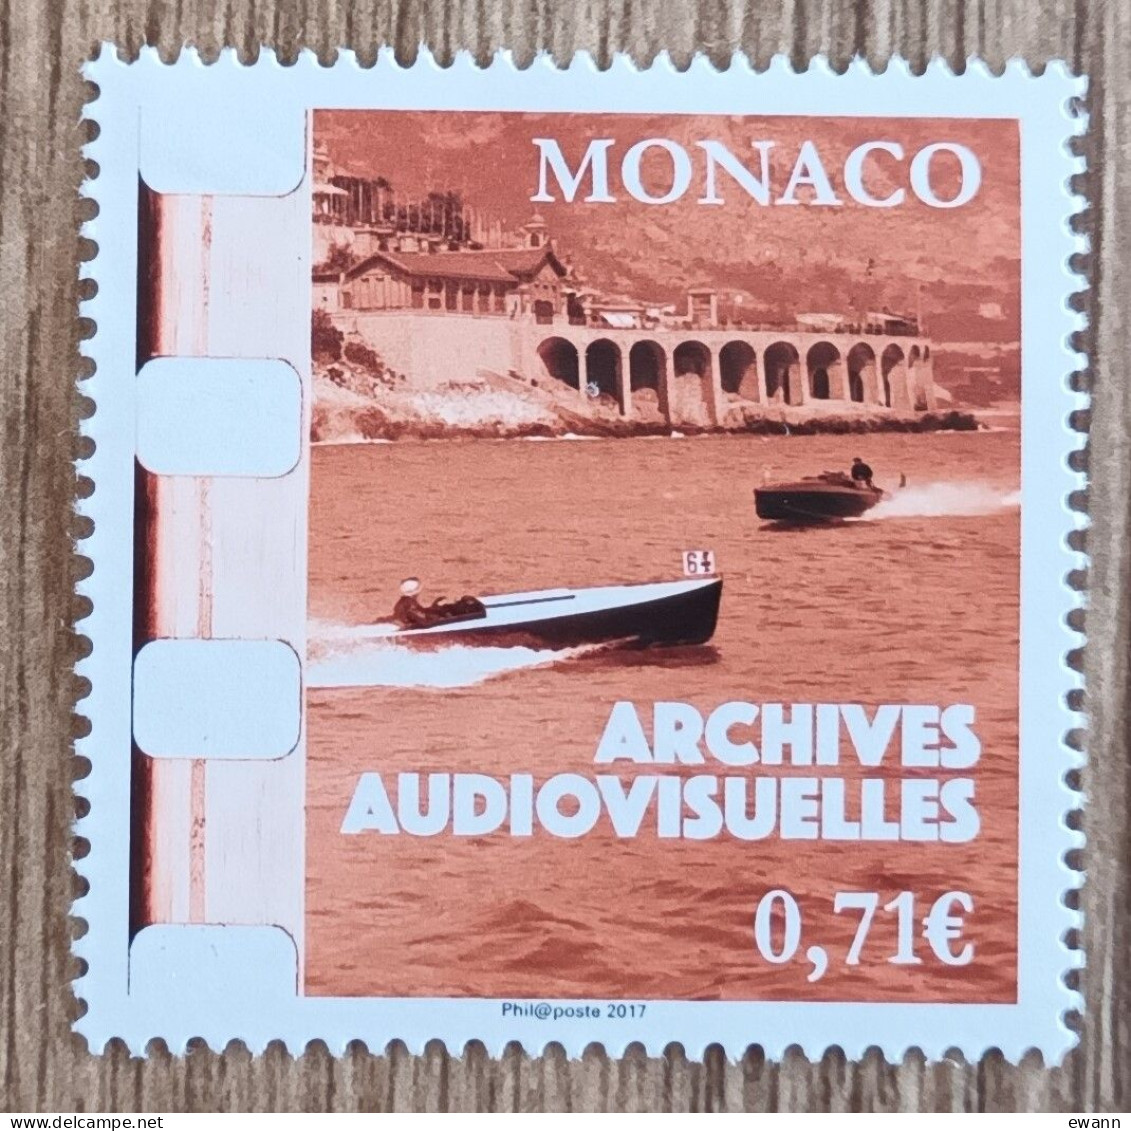 Monaco - YT N°3105 - 20e Anniversaire Des Archives Audiovisuelles De Monaco - 2017 - Neuf - Ungebraucht